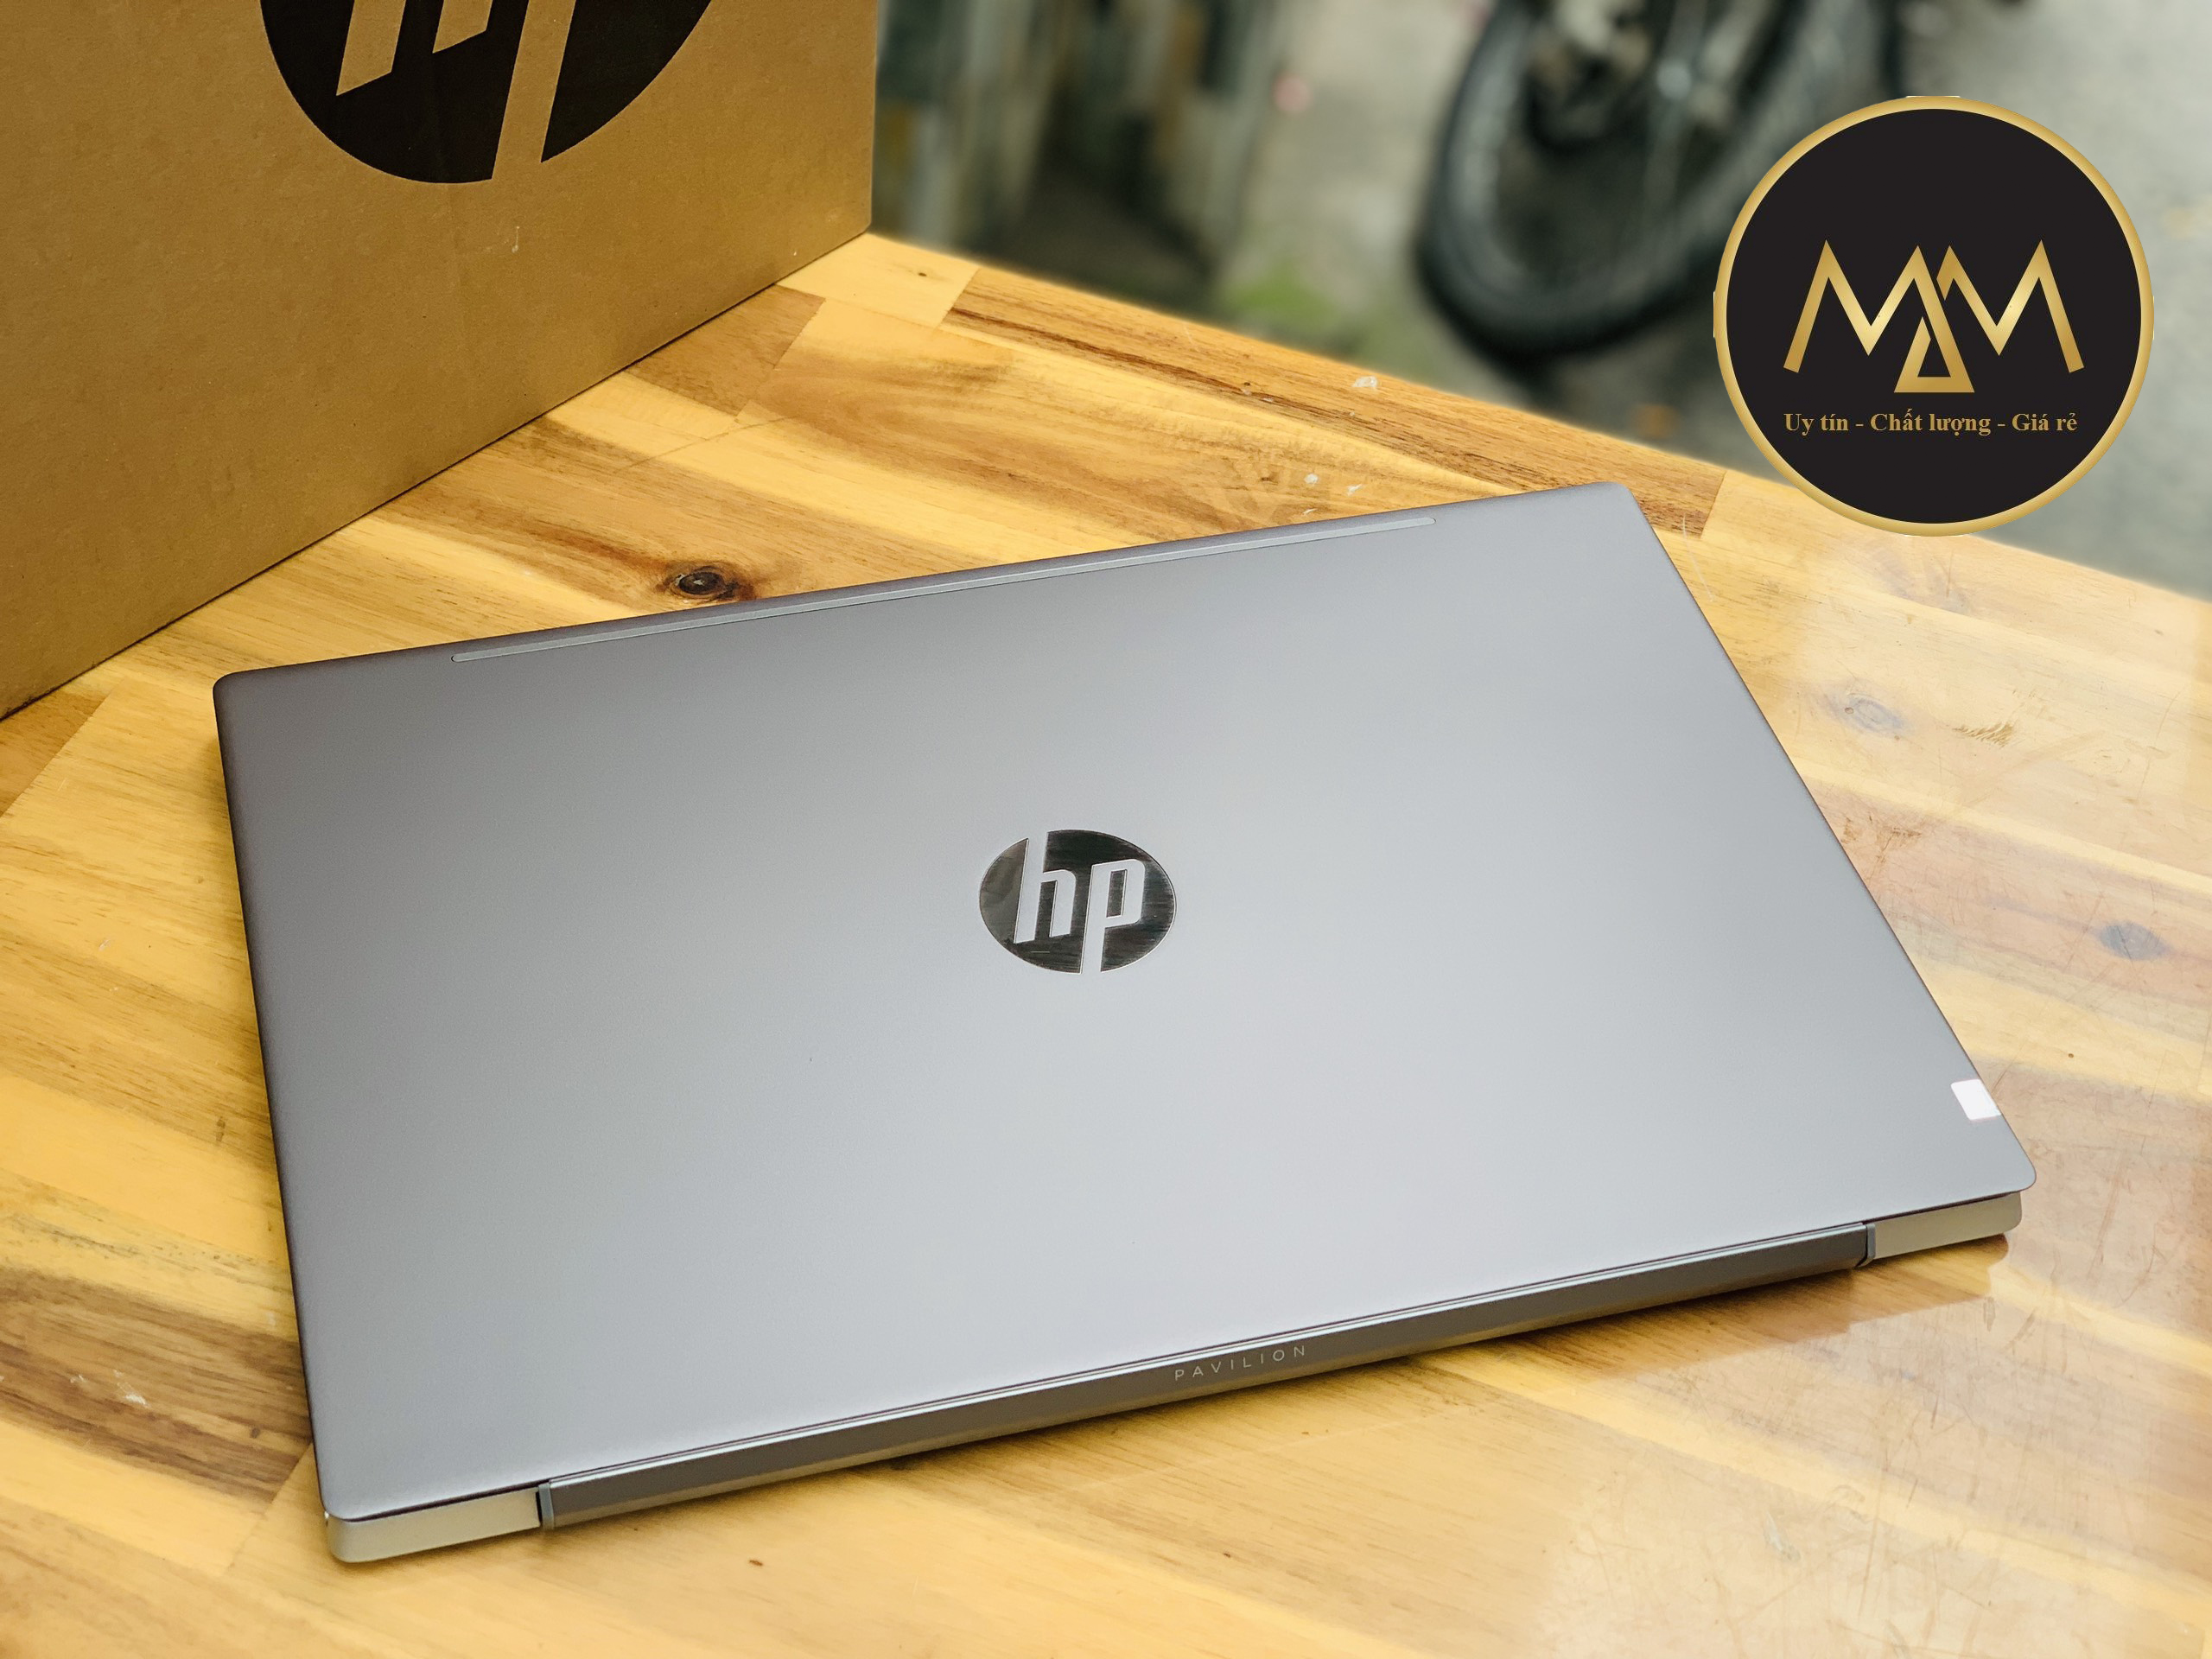 Laptop HP Pavilion 15 CS i7 1065G7 8CPUS/ 8G/ SSD/ Vga MX250/ Full HD IPS/ Viền Mỏng/ Vỏ Nhôm/ Giá Rẻ2